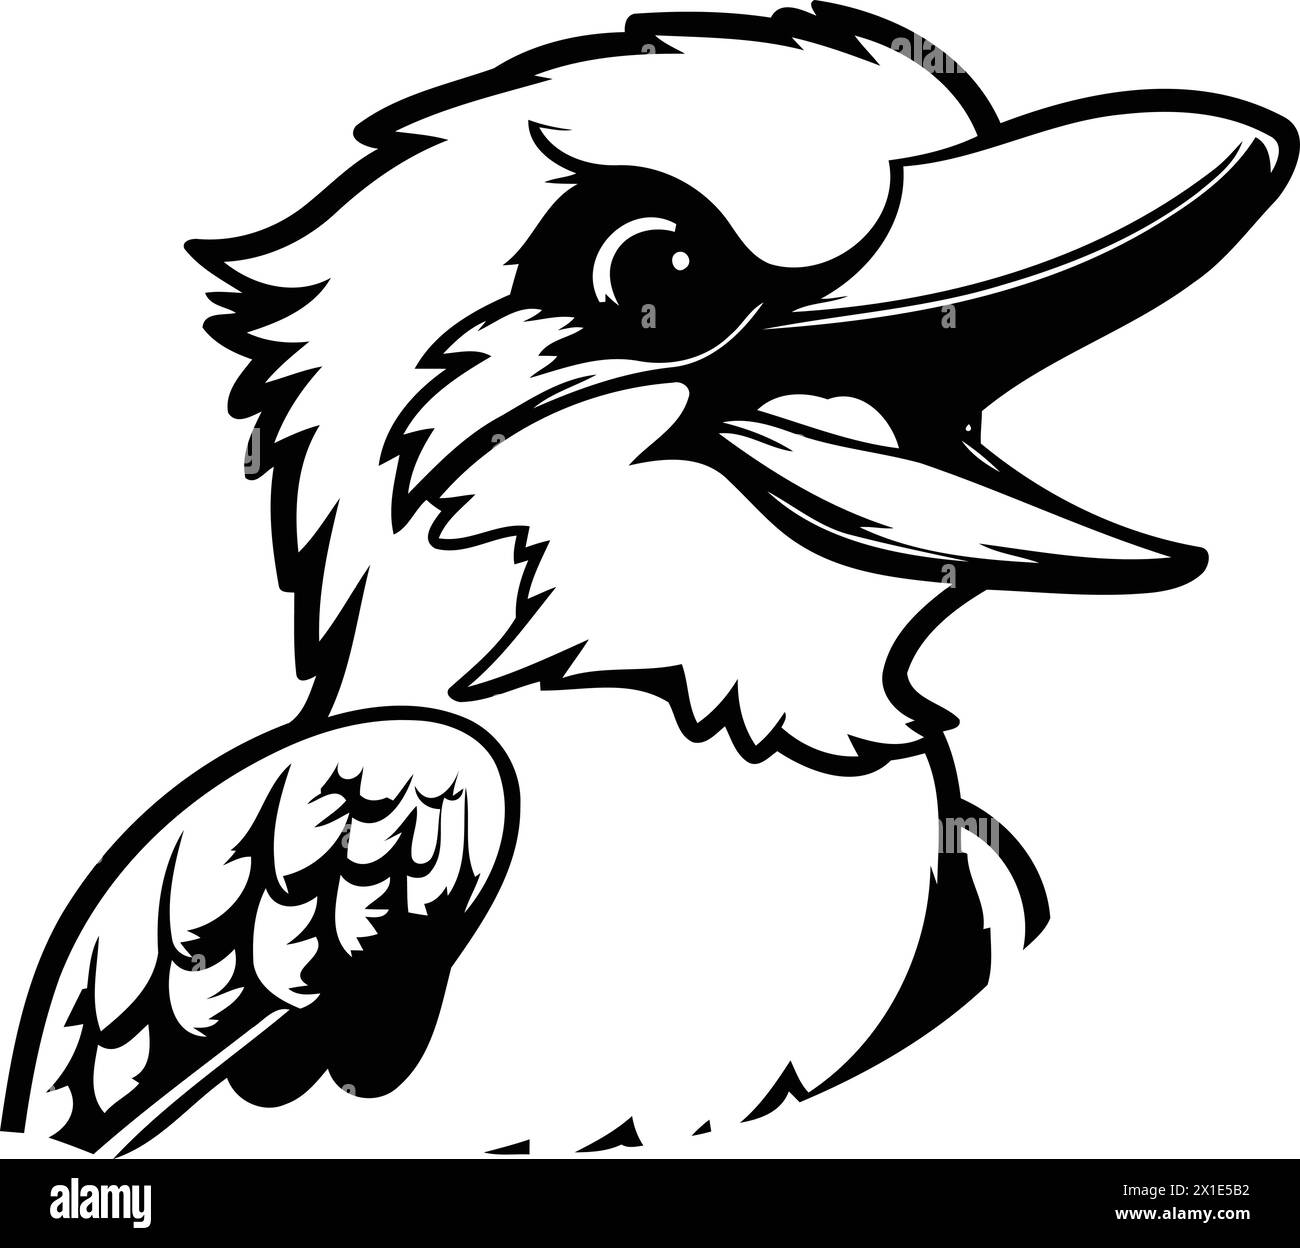 Cartoon kookaburra. Vector illustration of a kookaburra Stock Vector